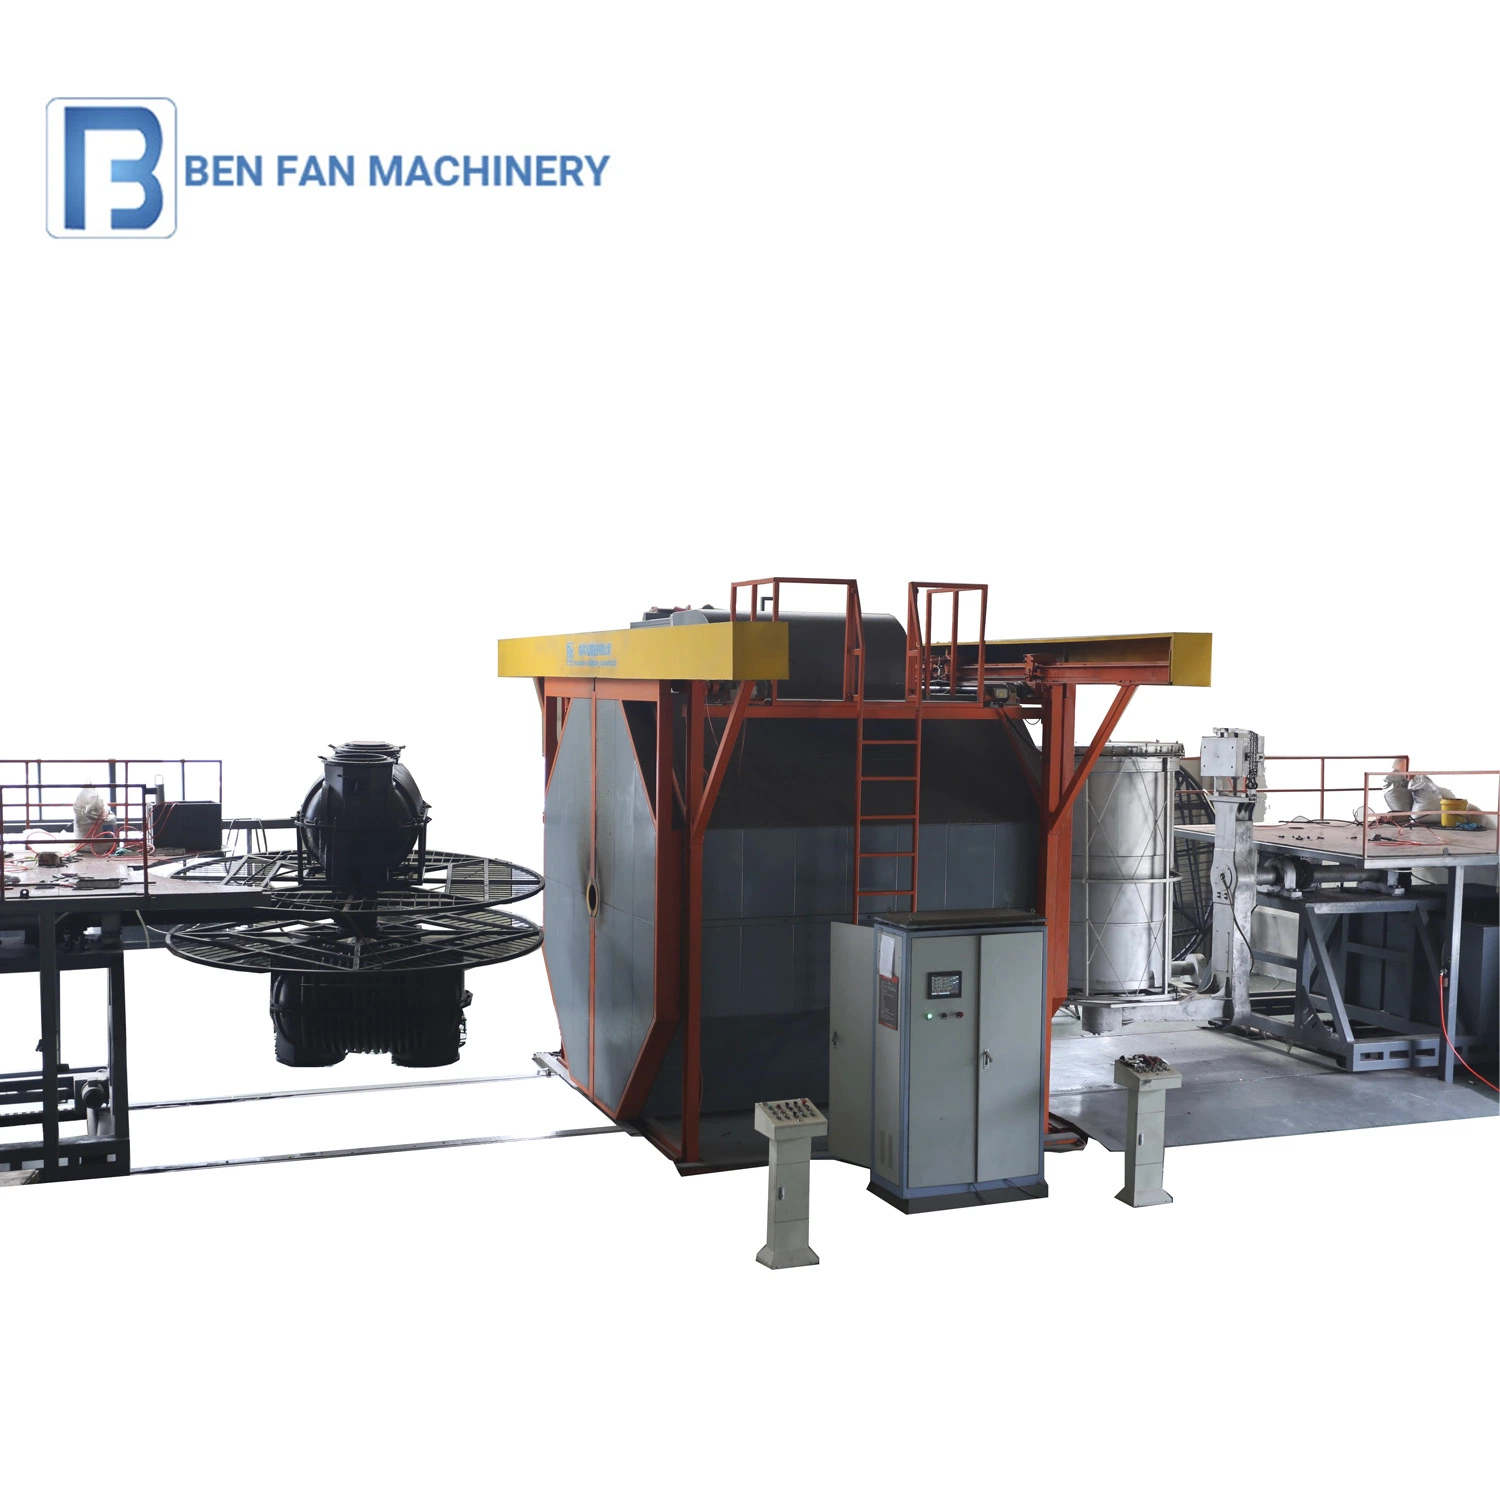 Machine de moulage rotatif pour la fabrication de produits en plastique, machine de rotomoulage pour réservoir d'eau, machines de moulage plastique manuelles